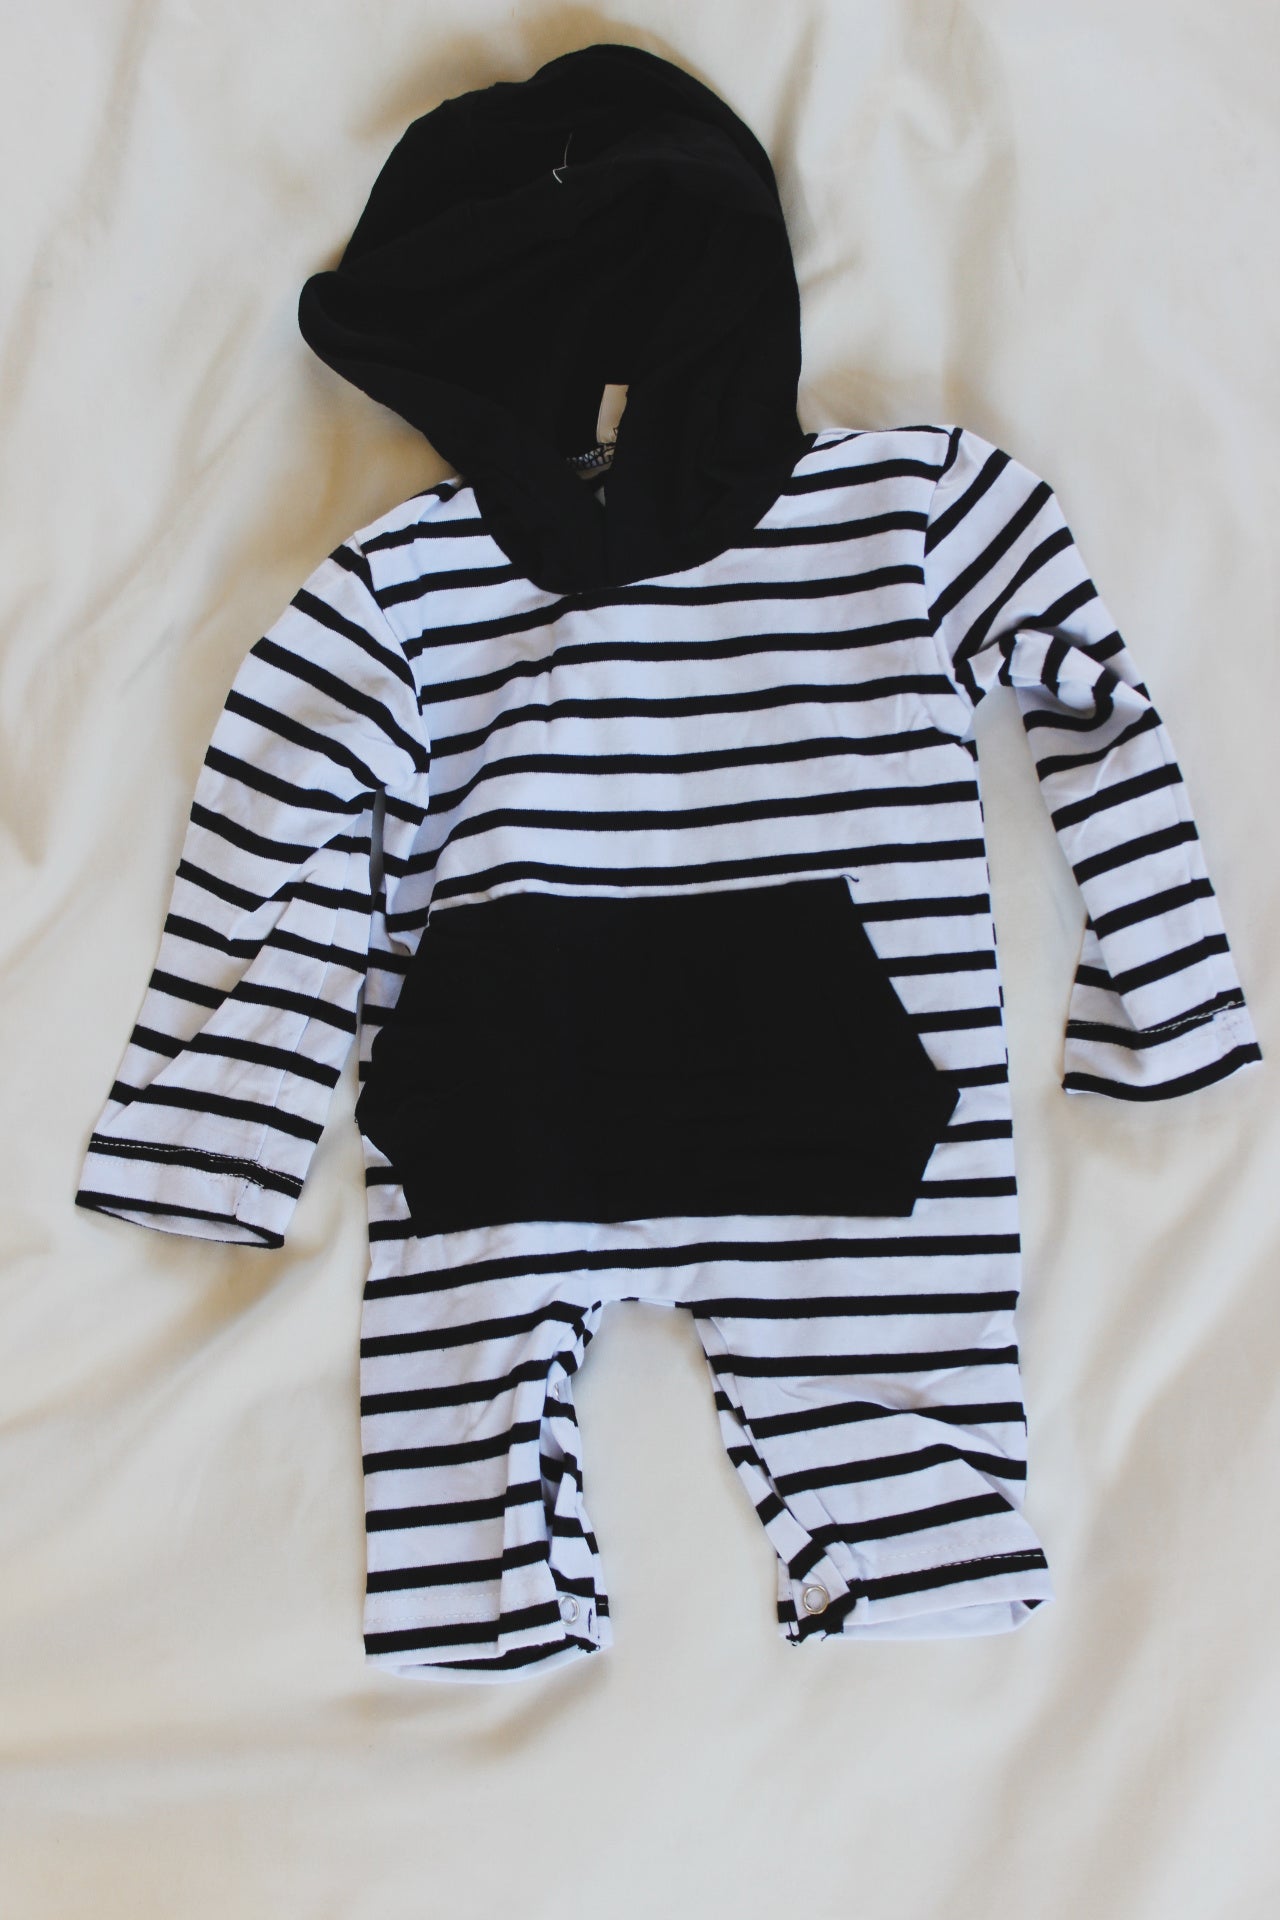 Black and White Hooded Infant Romper